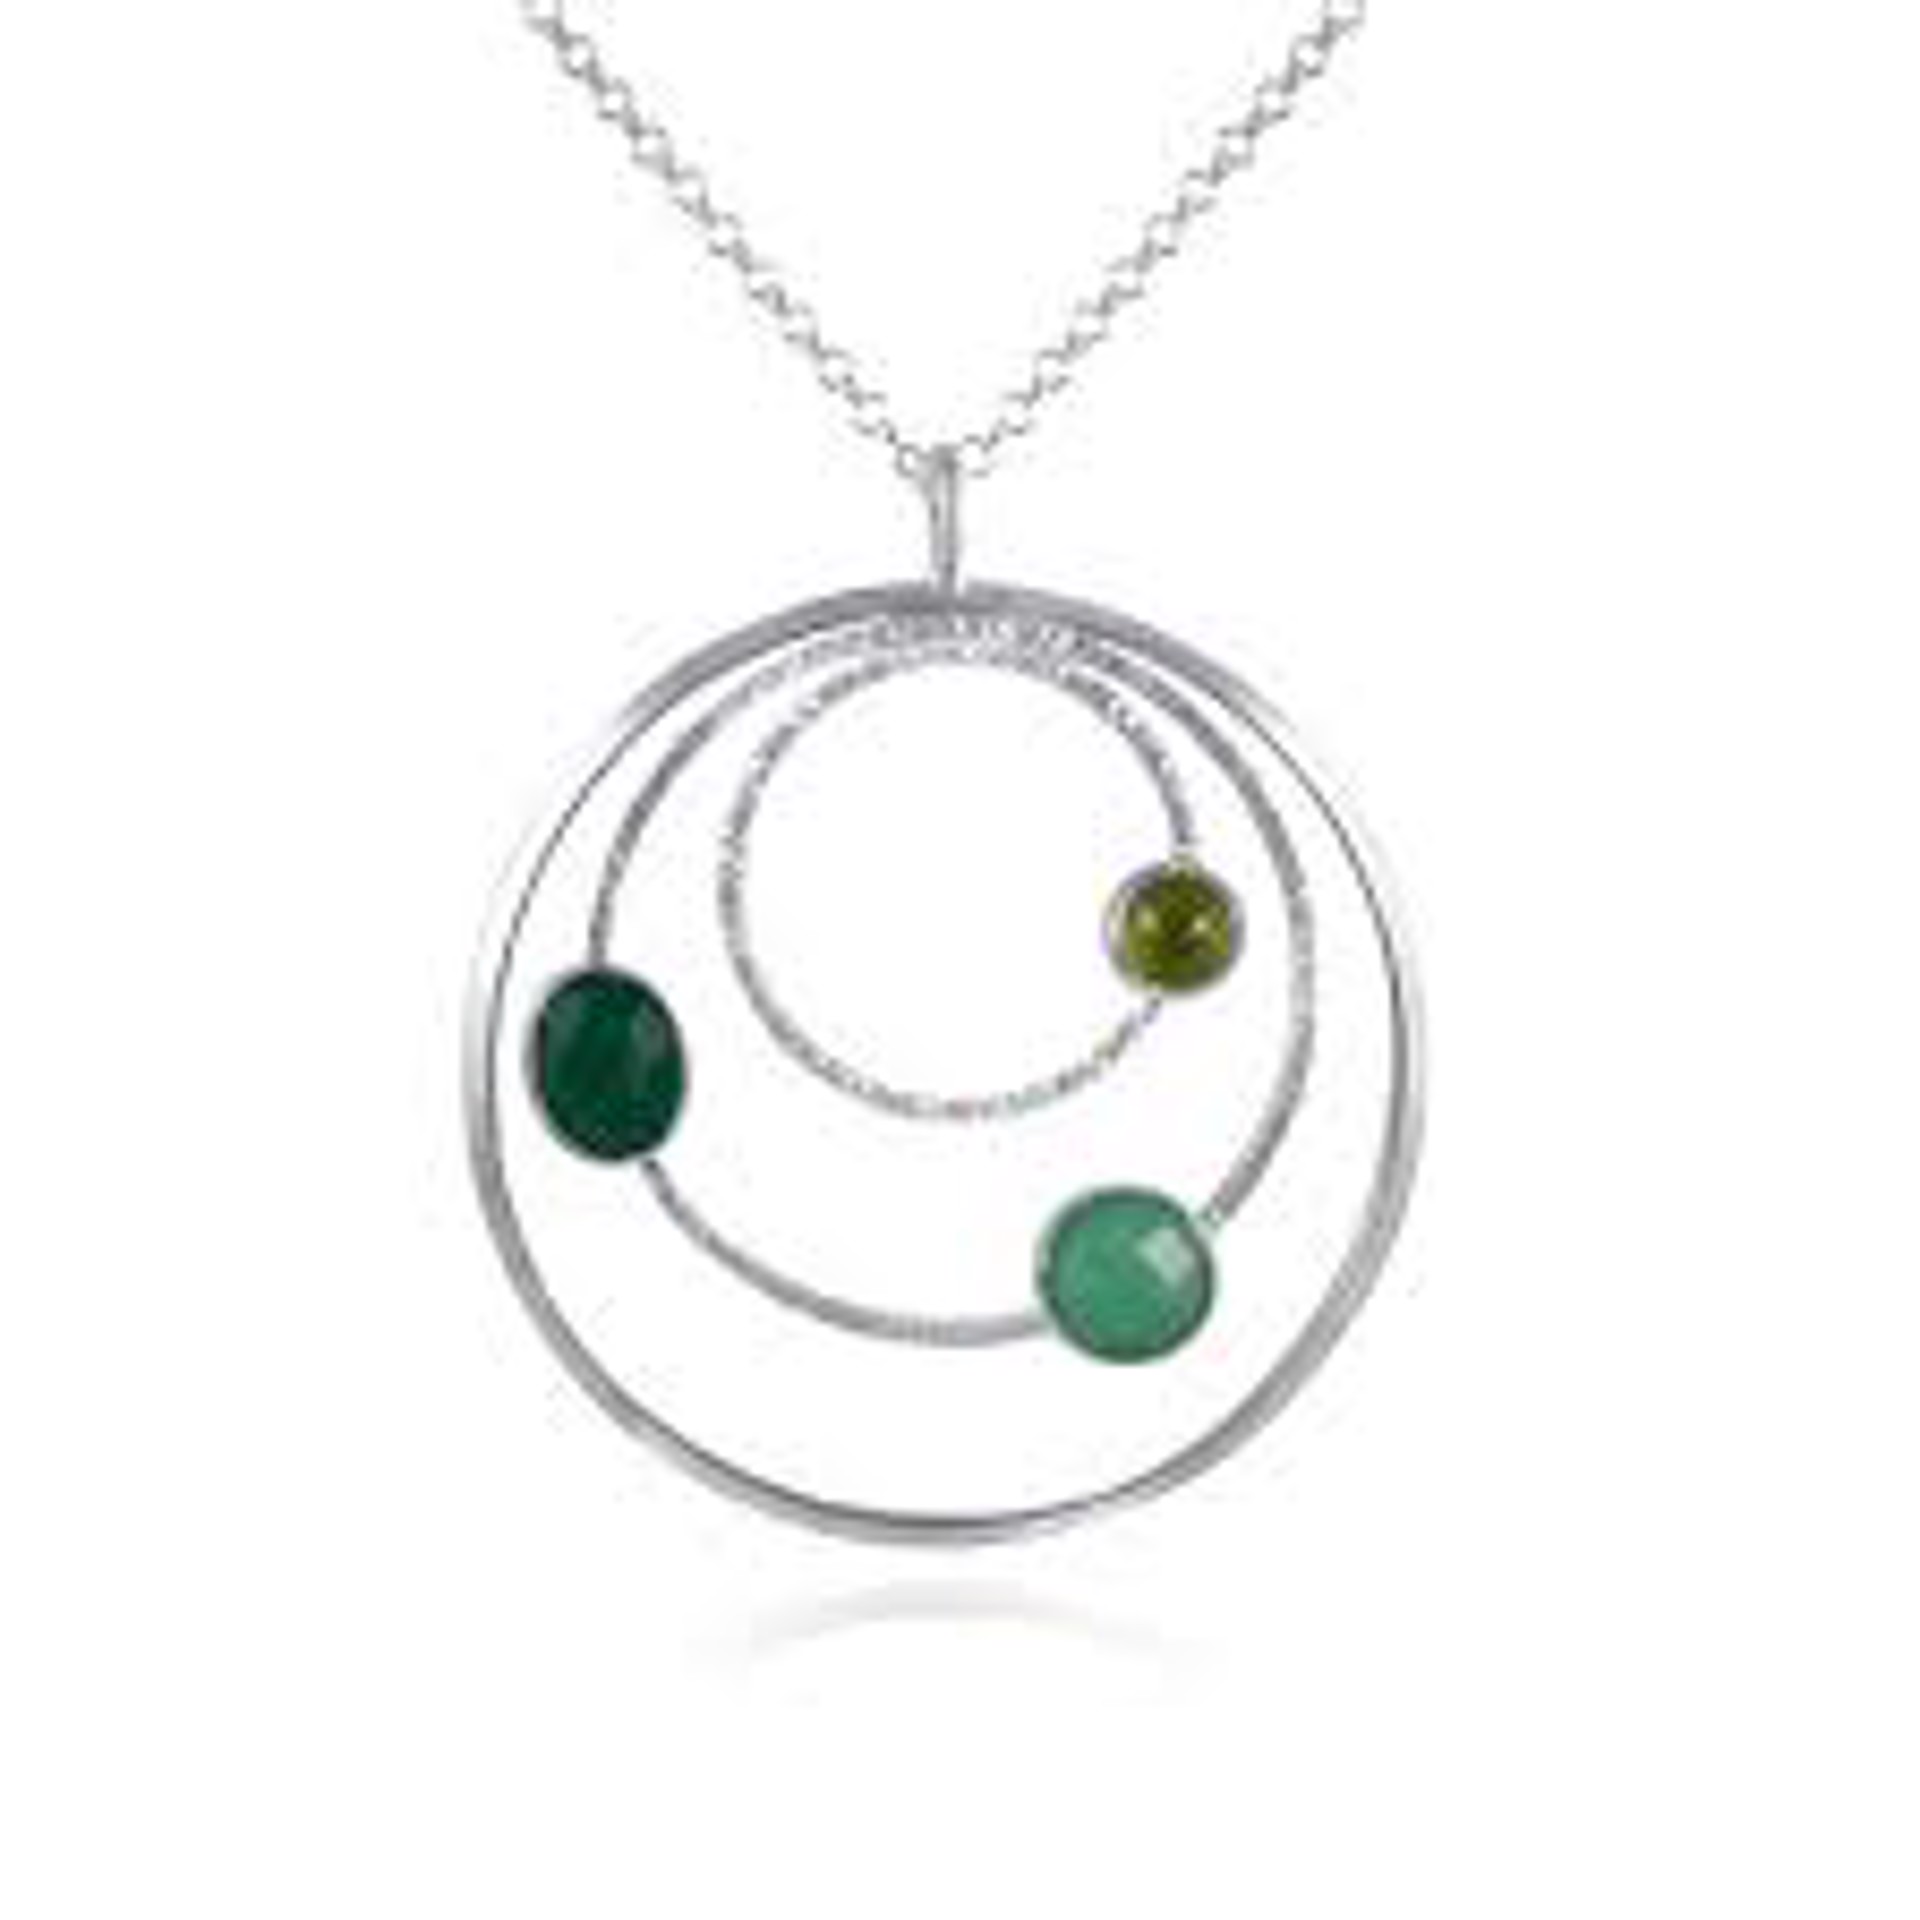 Orbit Necklace by Kristen Baird